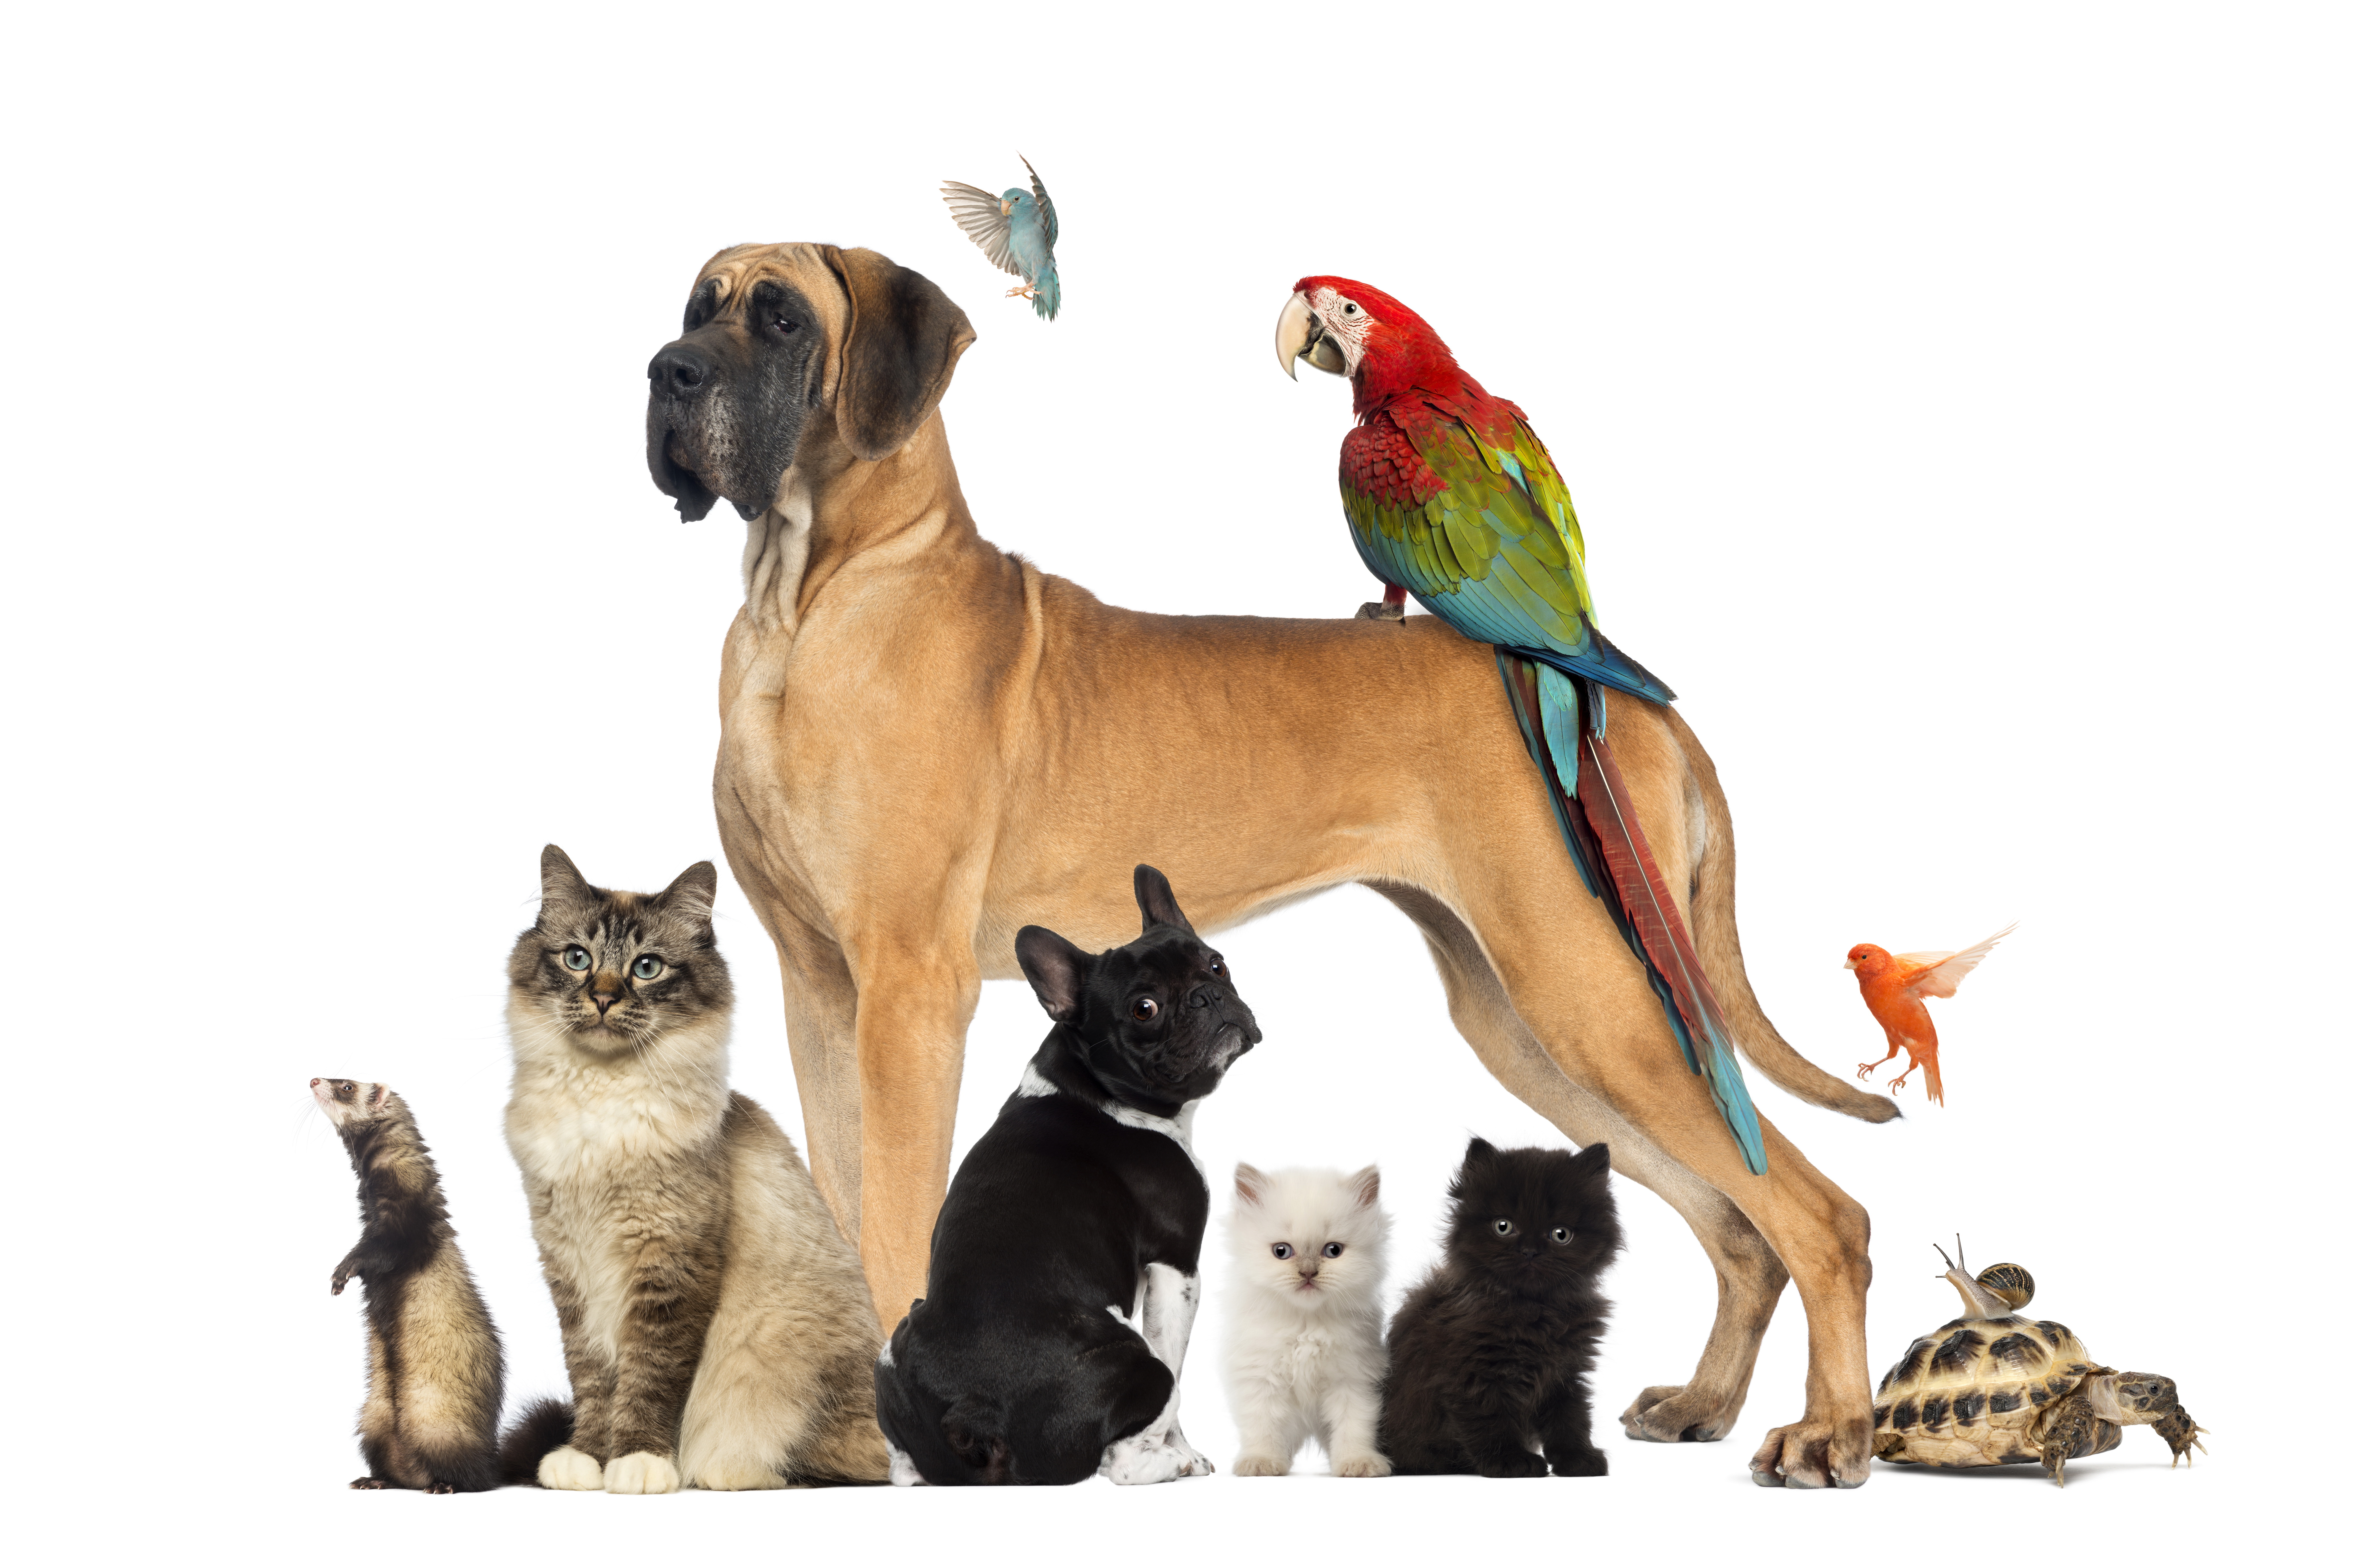 Name 5 pets. Домашний питомец. Кошки и собаки. Передержка животных. Разные животные вместе.